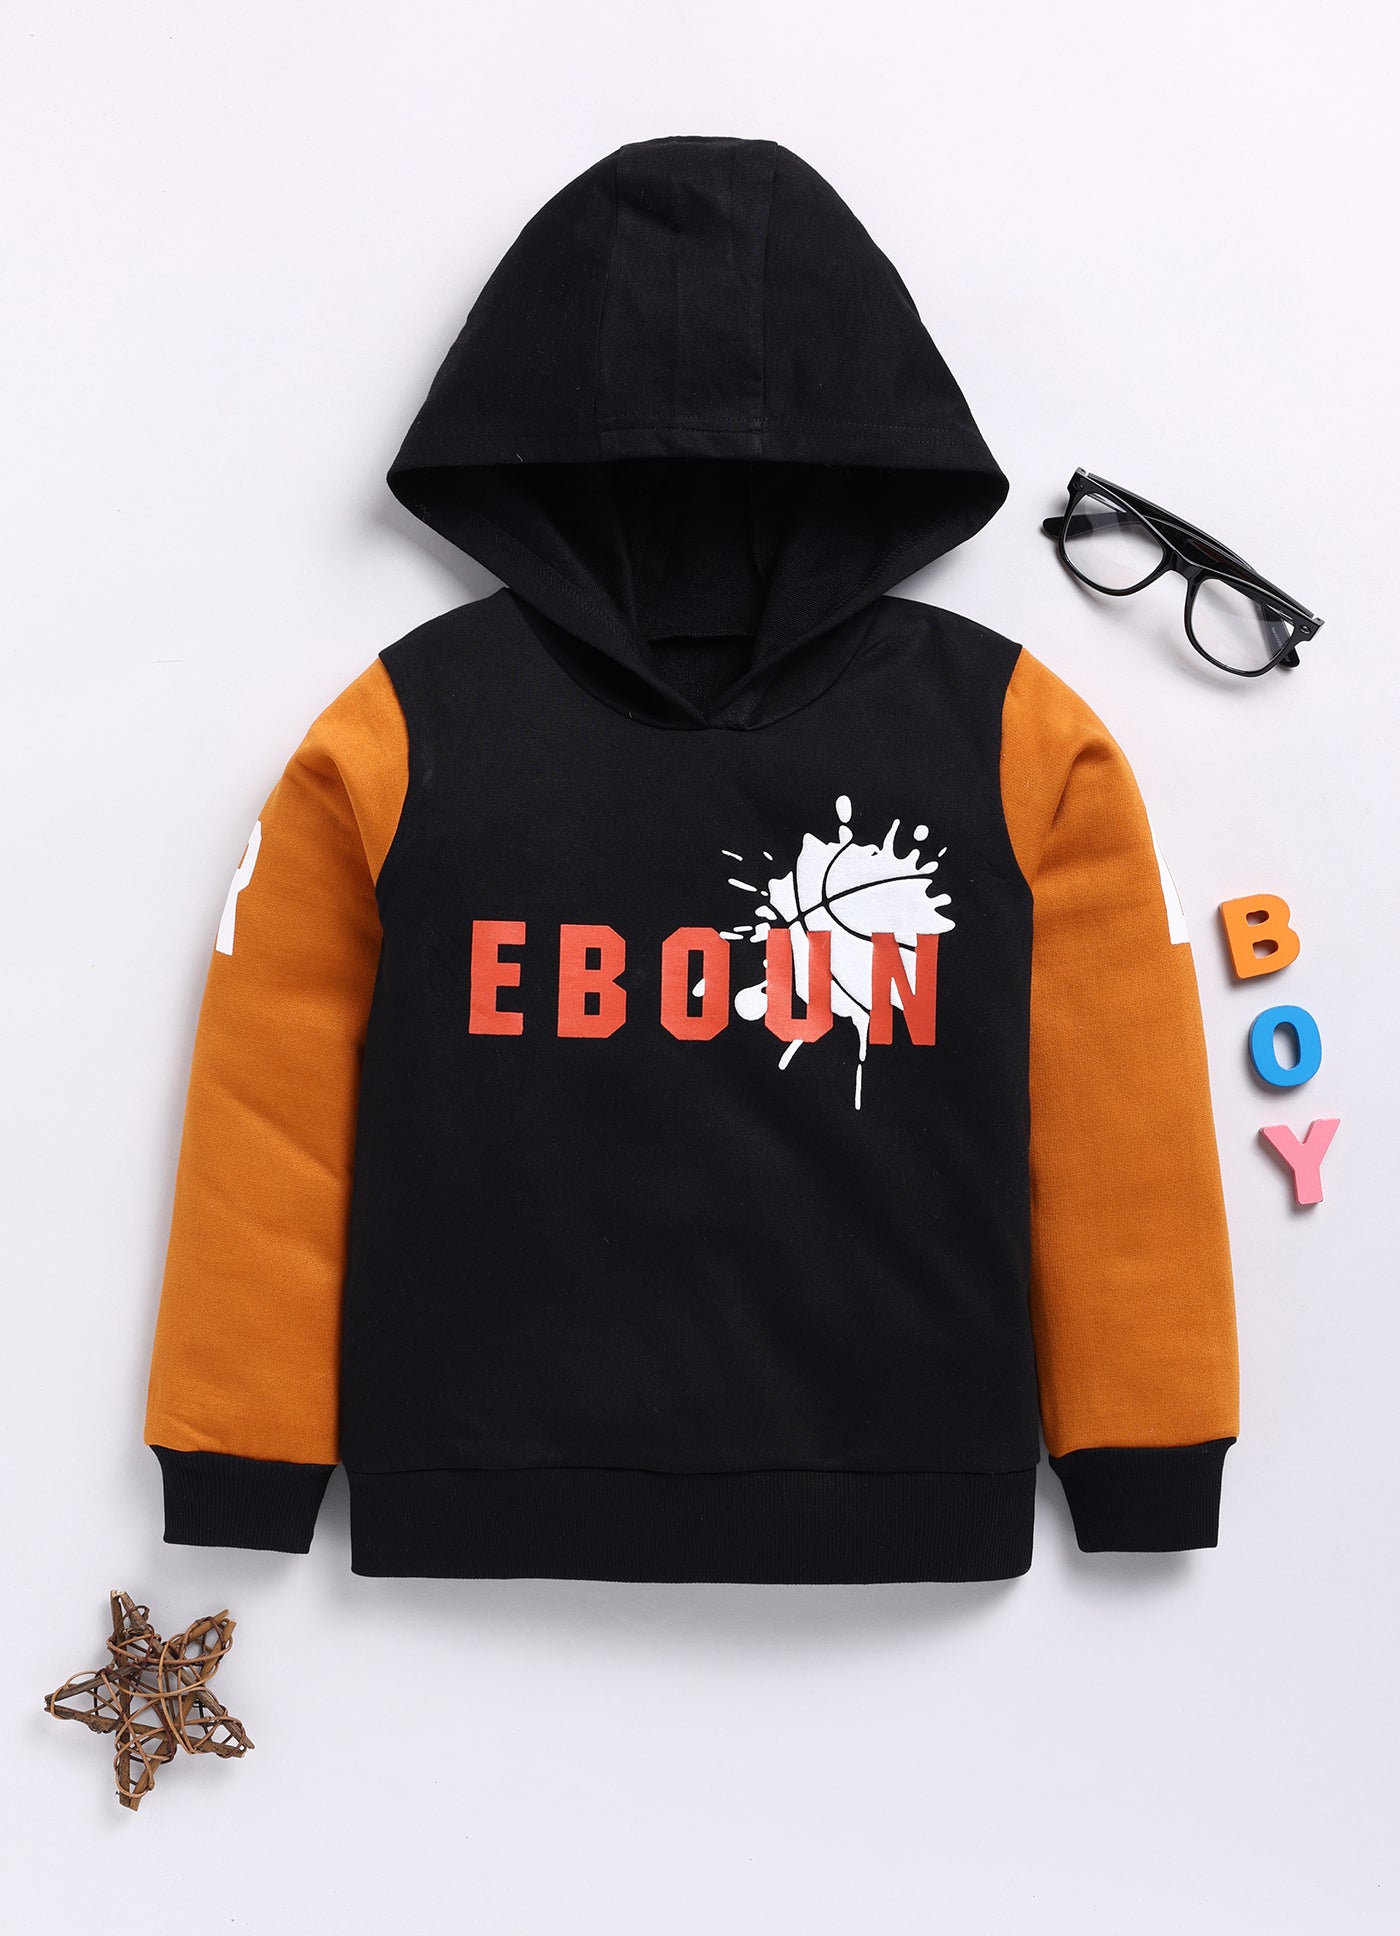 Mimino Full Sleeve Printed Baby Boys Sweatshirt- Brown & Black